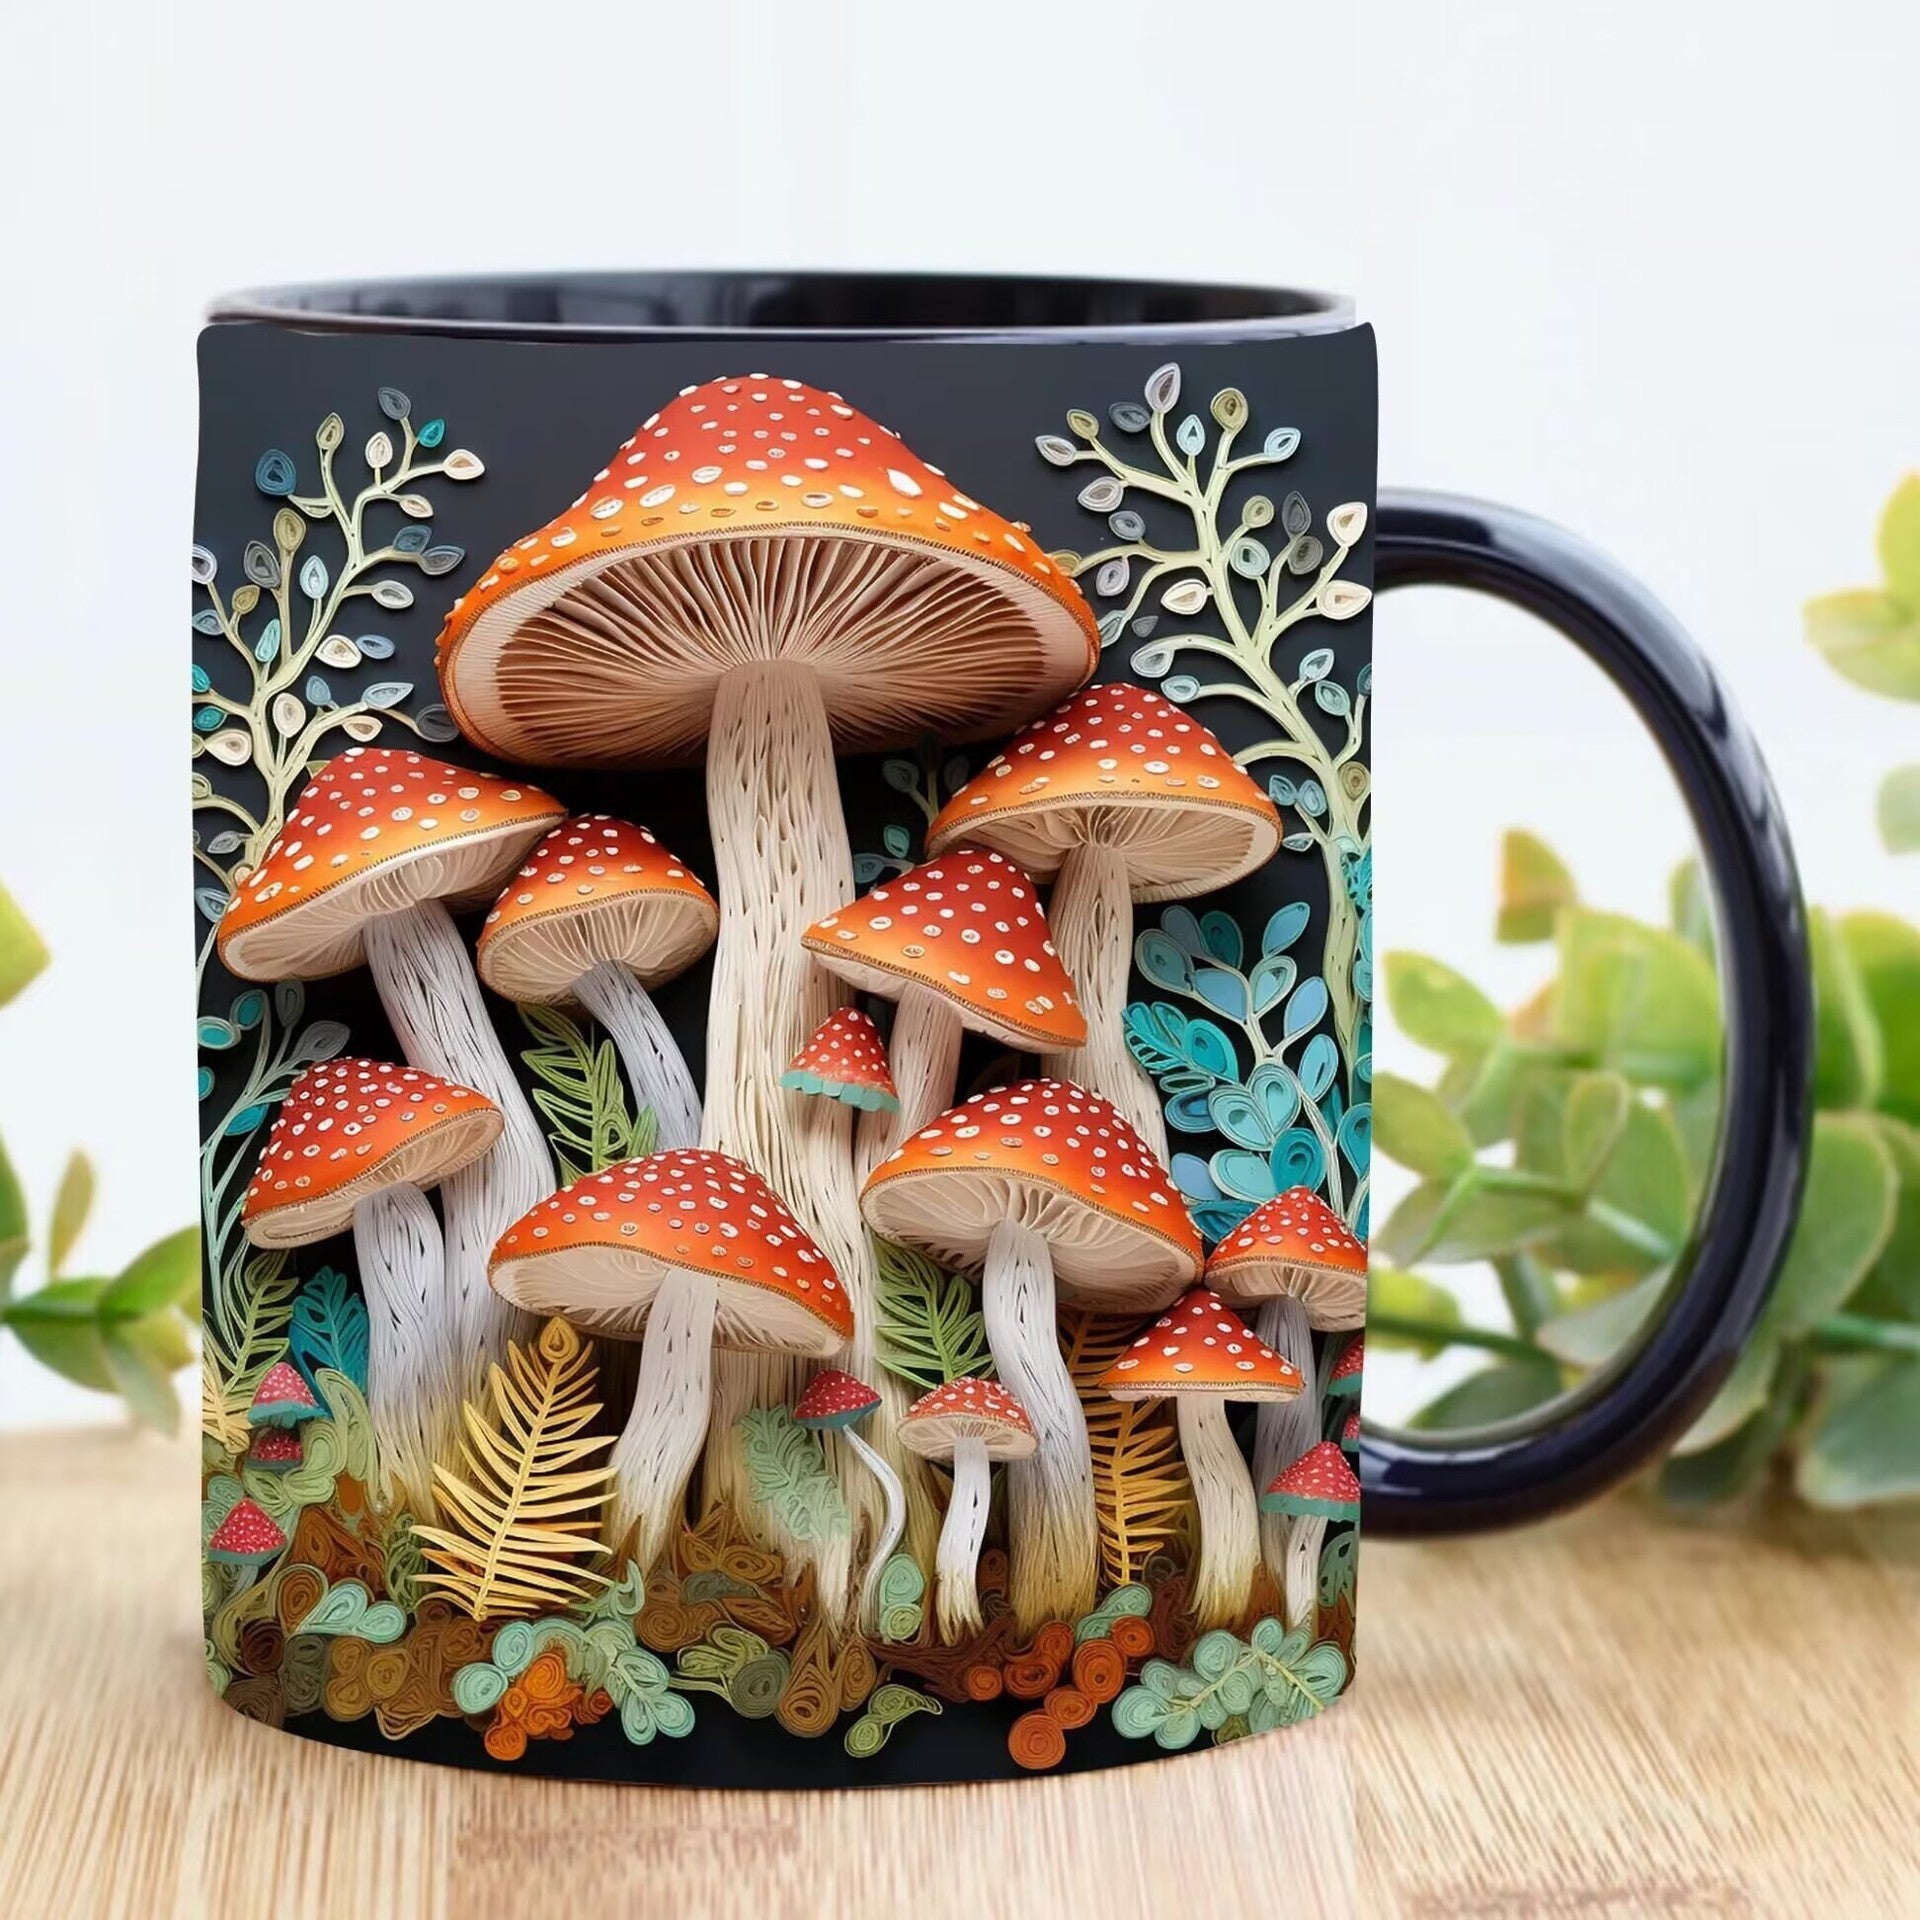 Fashion Personality Magic Mushroom Mugs